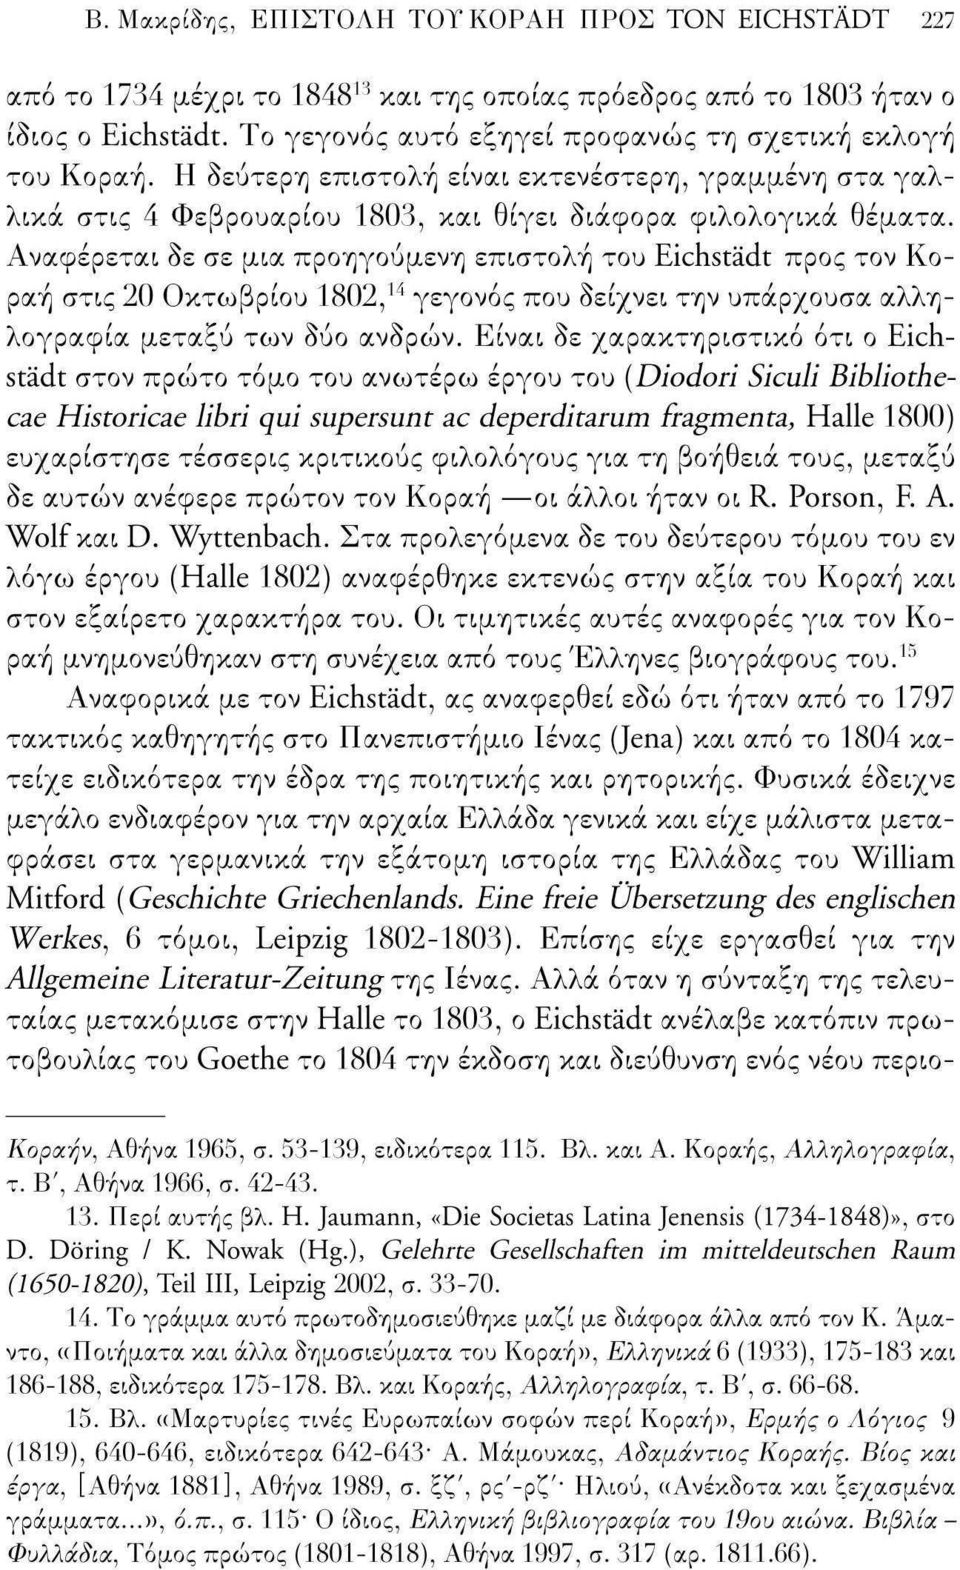 Αναφέρεται δε σε μια προηγούμενη επιστολή του Eichstädt προς τον Κοραή στις 20 Οκτωβρίου 1802, 14 γεγονός που δείχνει την υπάρχουσα αλληλογραφία μεταξύ των δύο ανδρών.